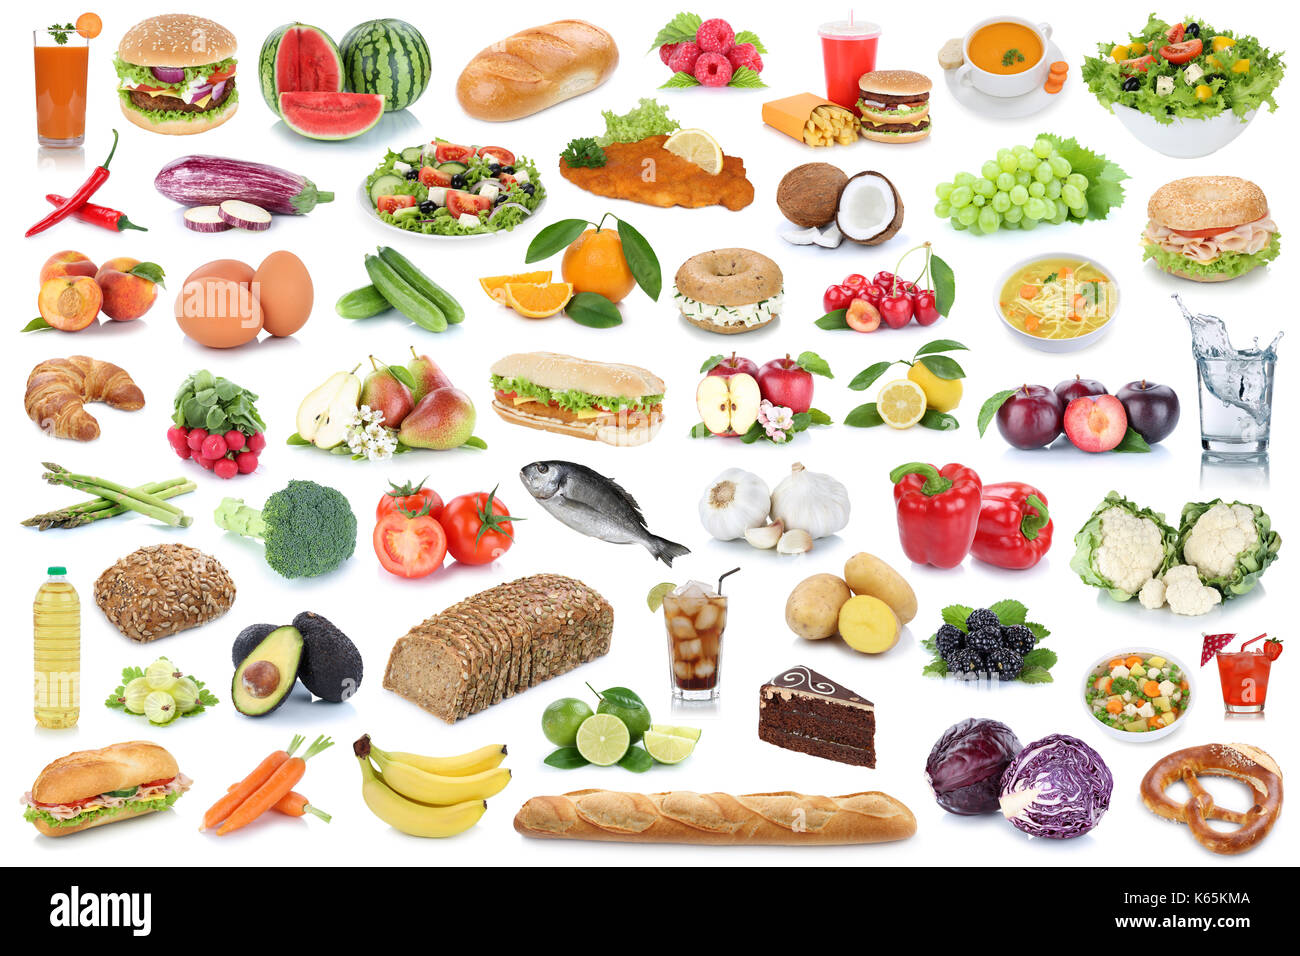 Essen und Trinken Sammlung Hintergrund gesund essen Obst Gemüse Obst Getränke auf weißem Hintergrund Stockfoto